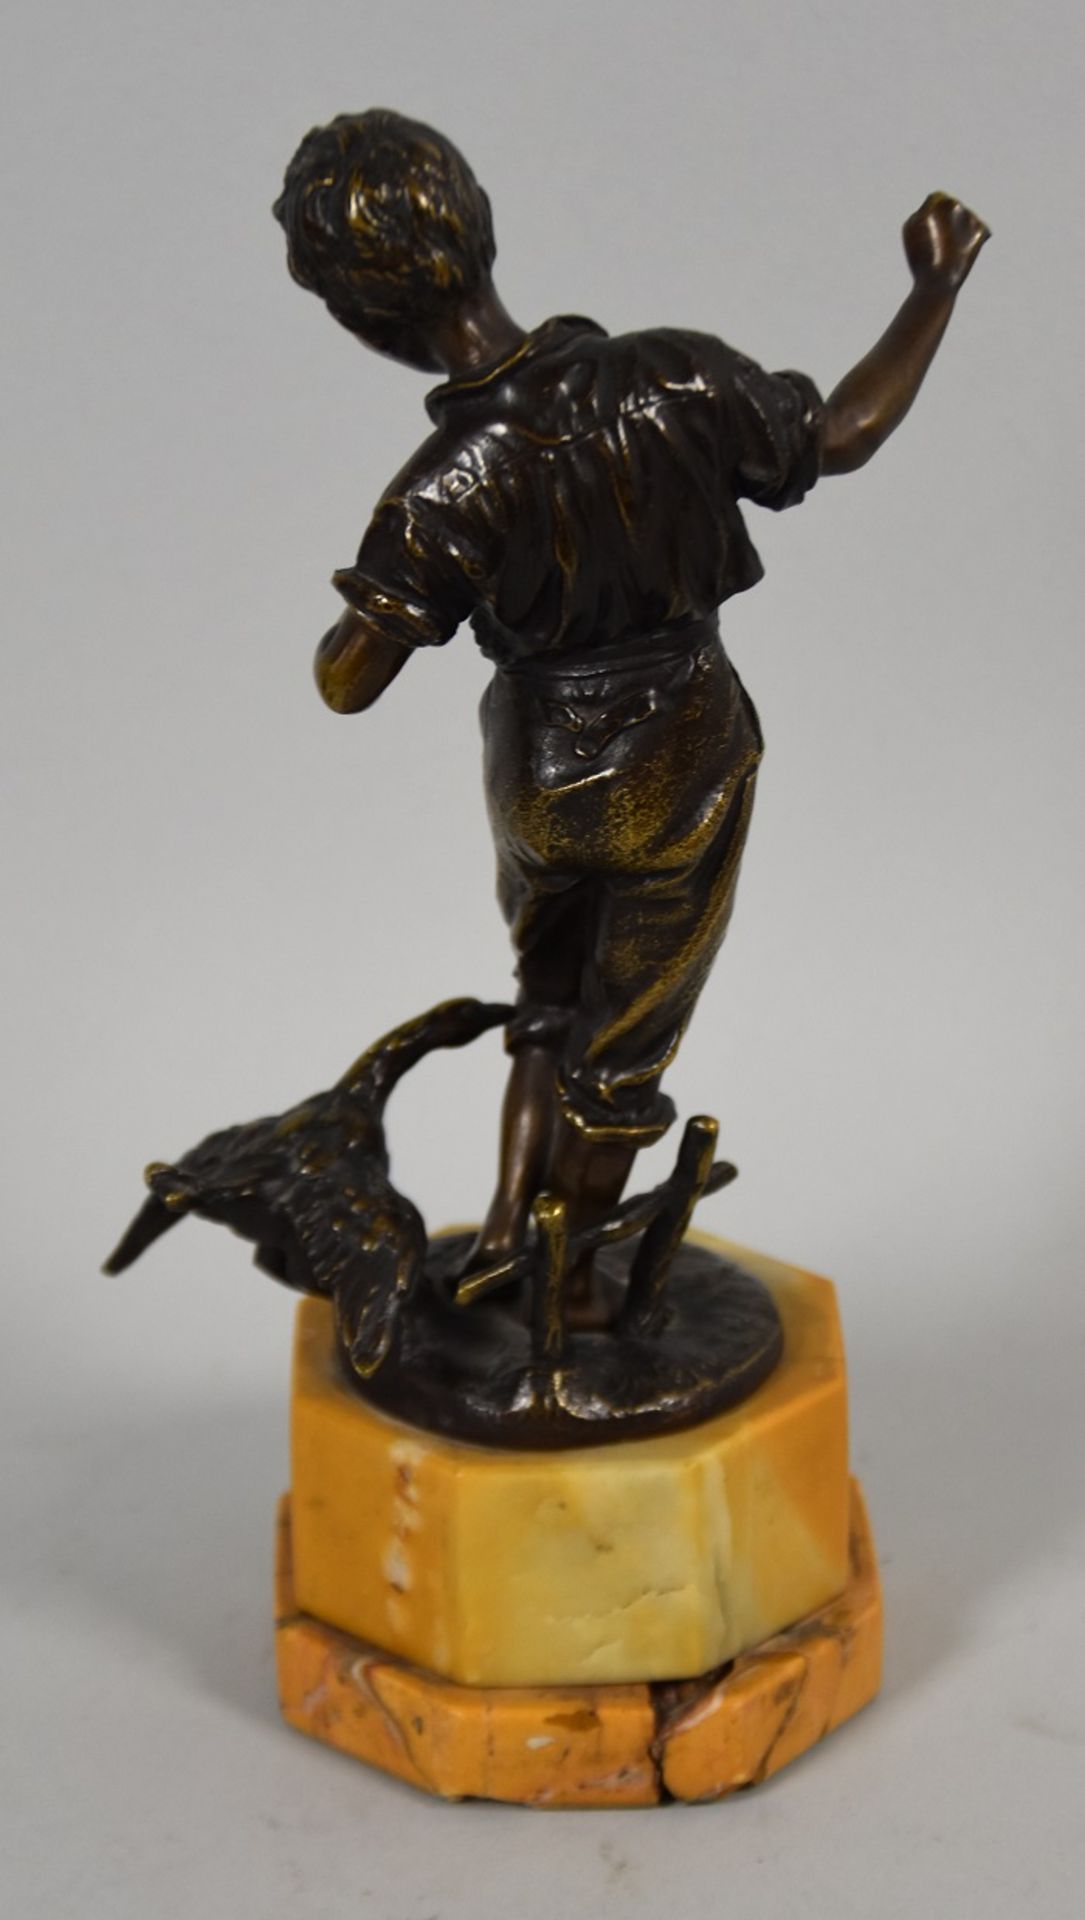 HIRTENJUNGE mit zwickender Gans, Bronze braun patiniert, auf runder Plinthe mit Monogramm "SB", - Image 3 of 3